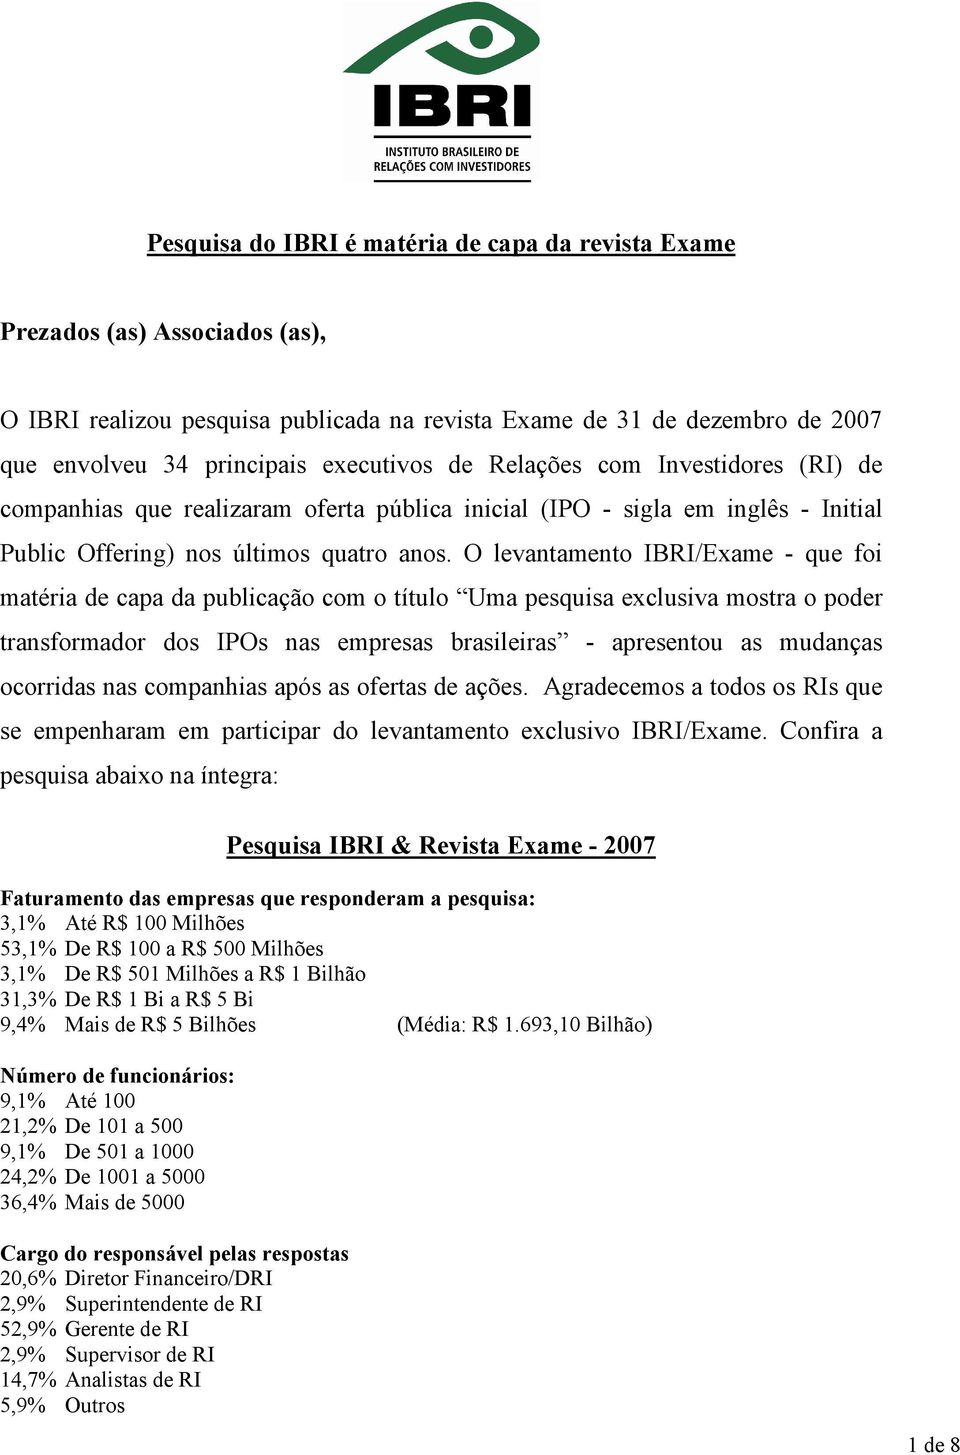 O levantamento IBRI/Exame - que foi matéria de capa da publicação com o título Uma pesquisa exclusiva mostra o poder transformador dos IPOs nas empresas brasileiras - apresentou as mudanças ocorridas